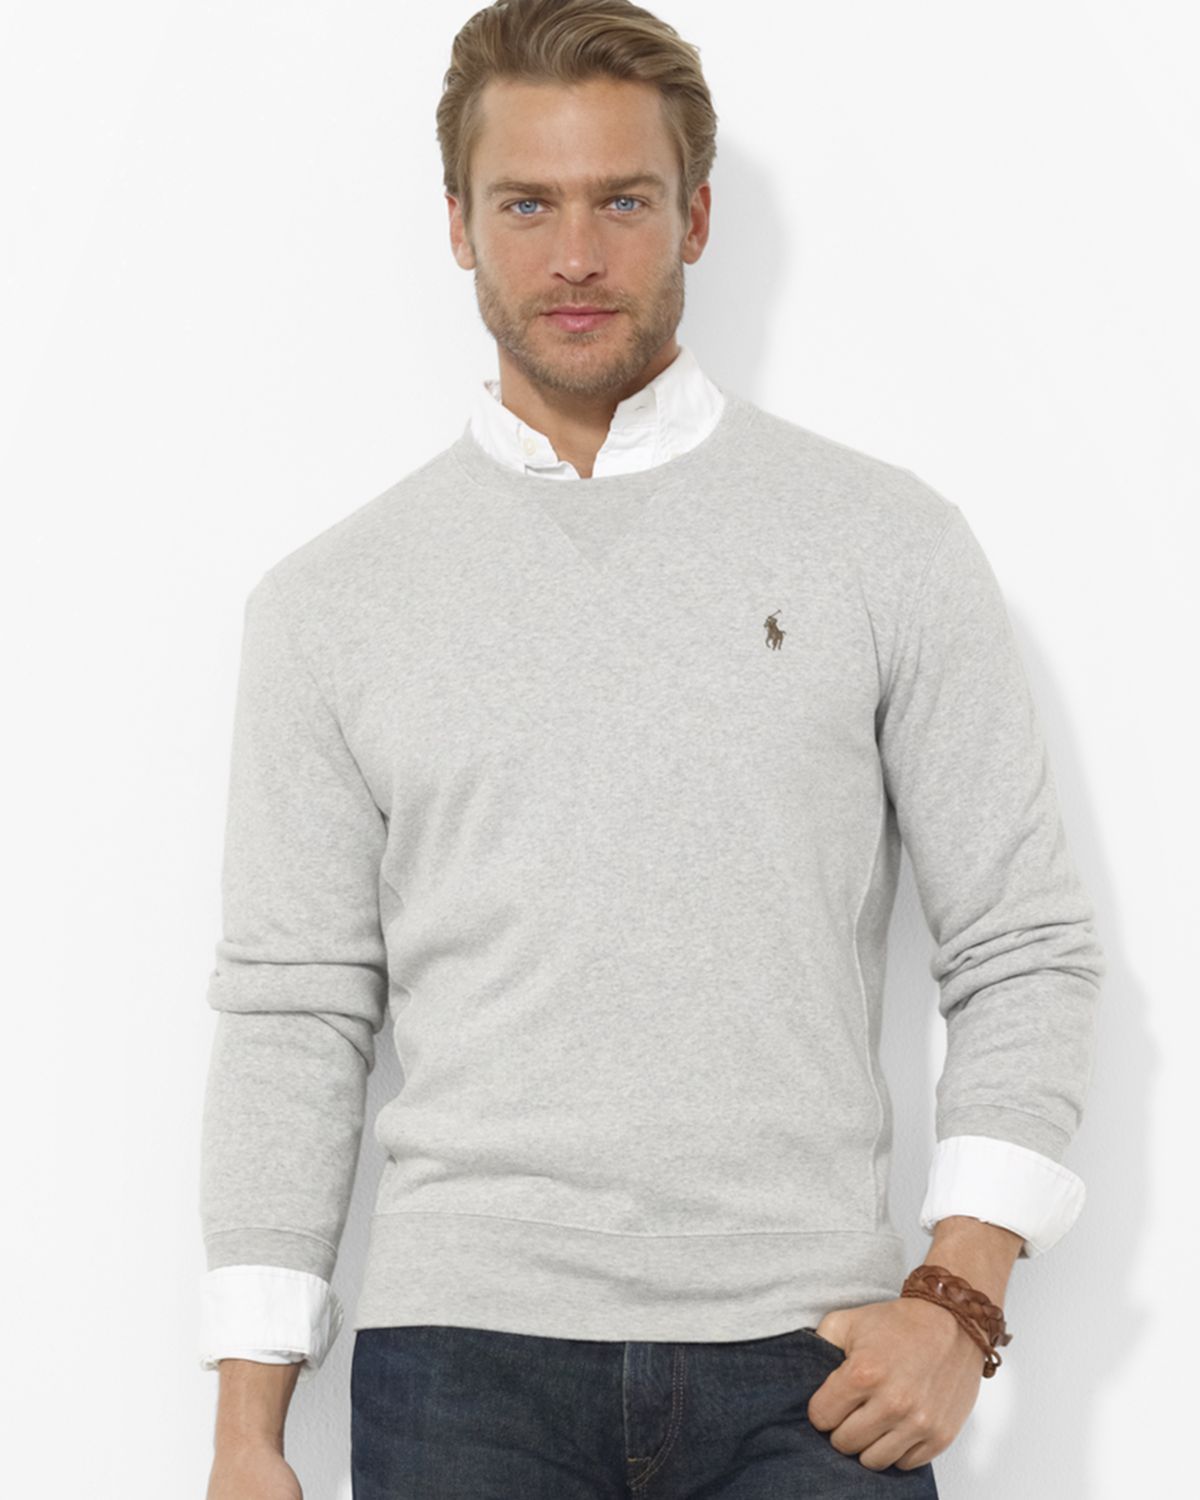 Ralph Lauren sweaters represent sporty elegance